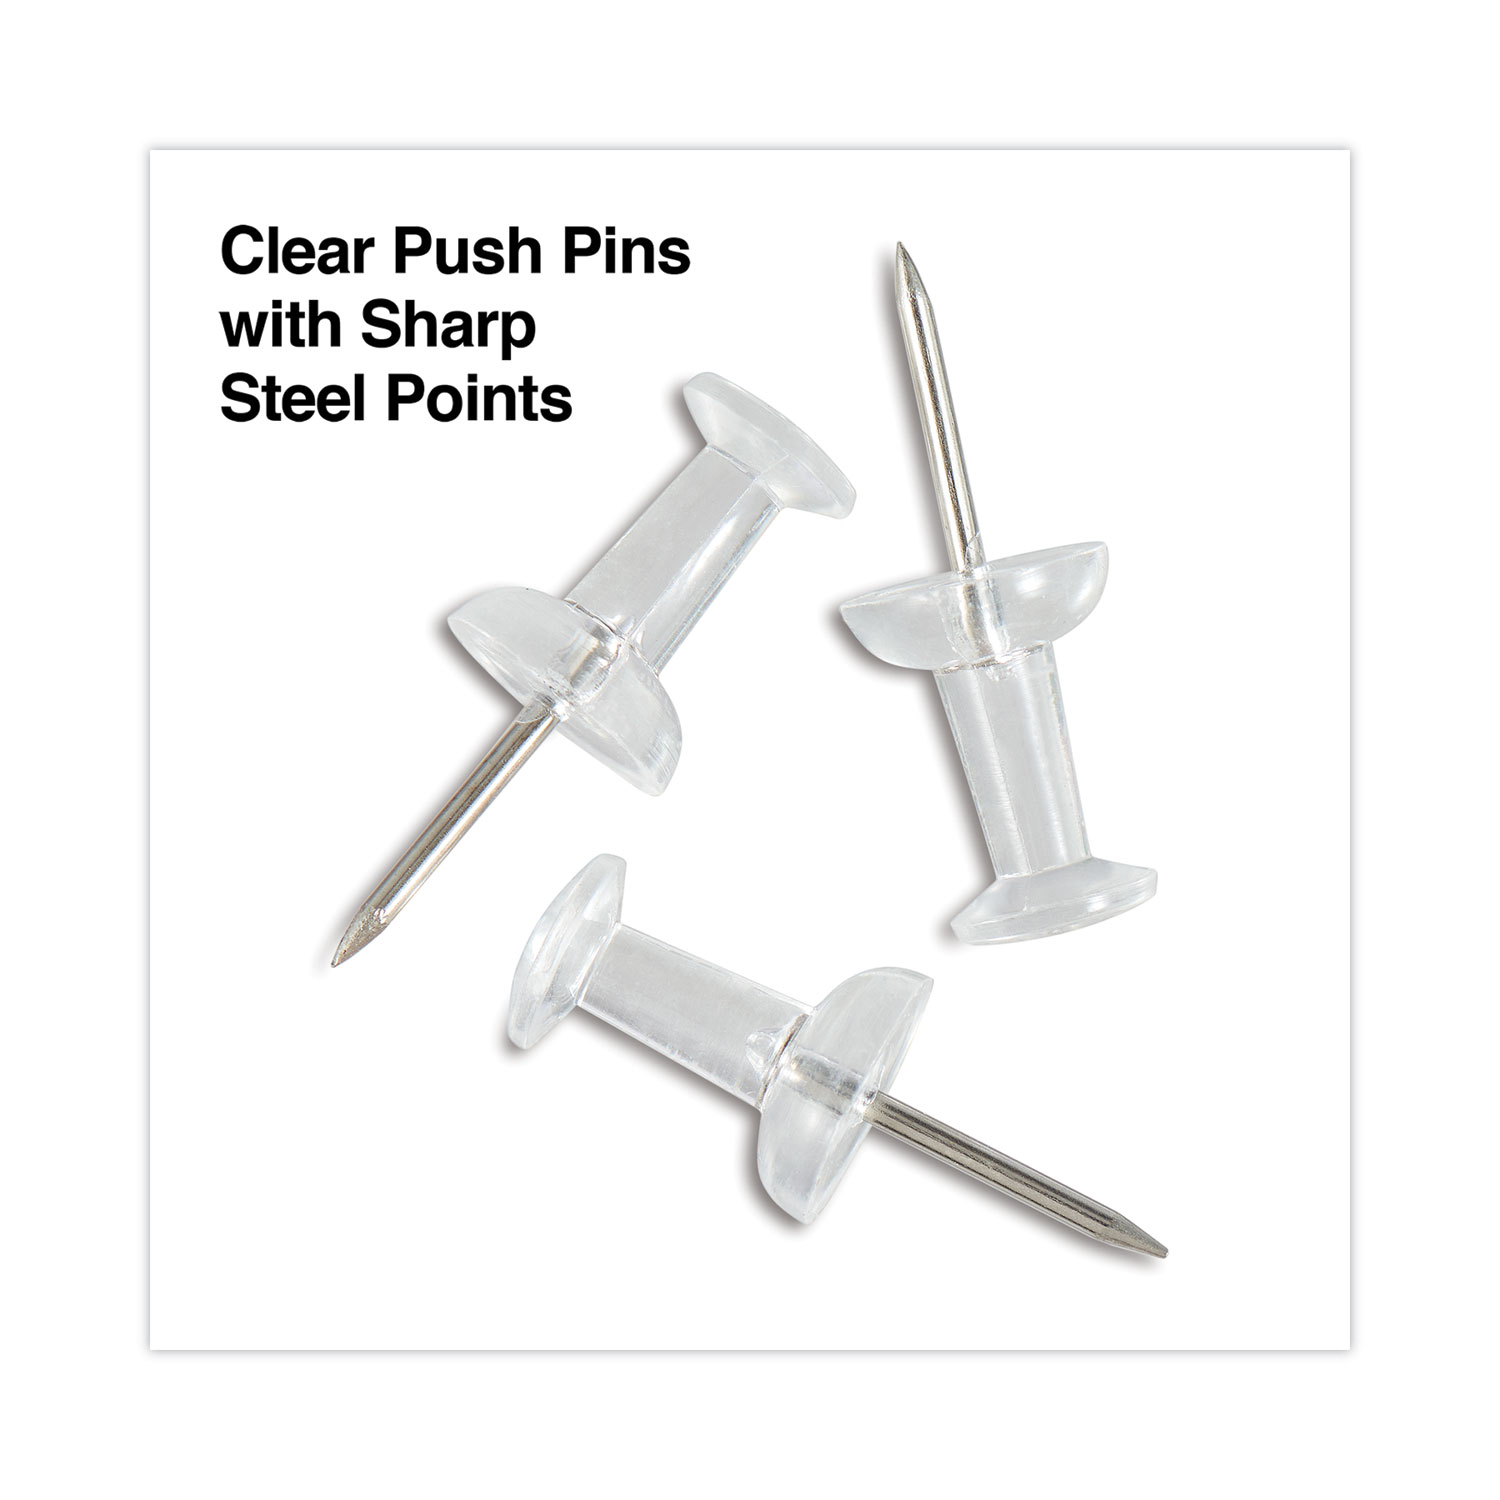 OIC Push Pins, Clear - 200 pins